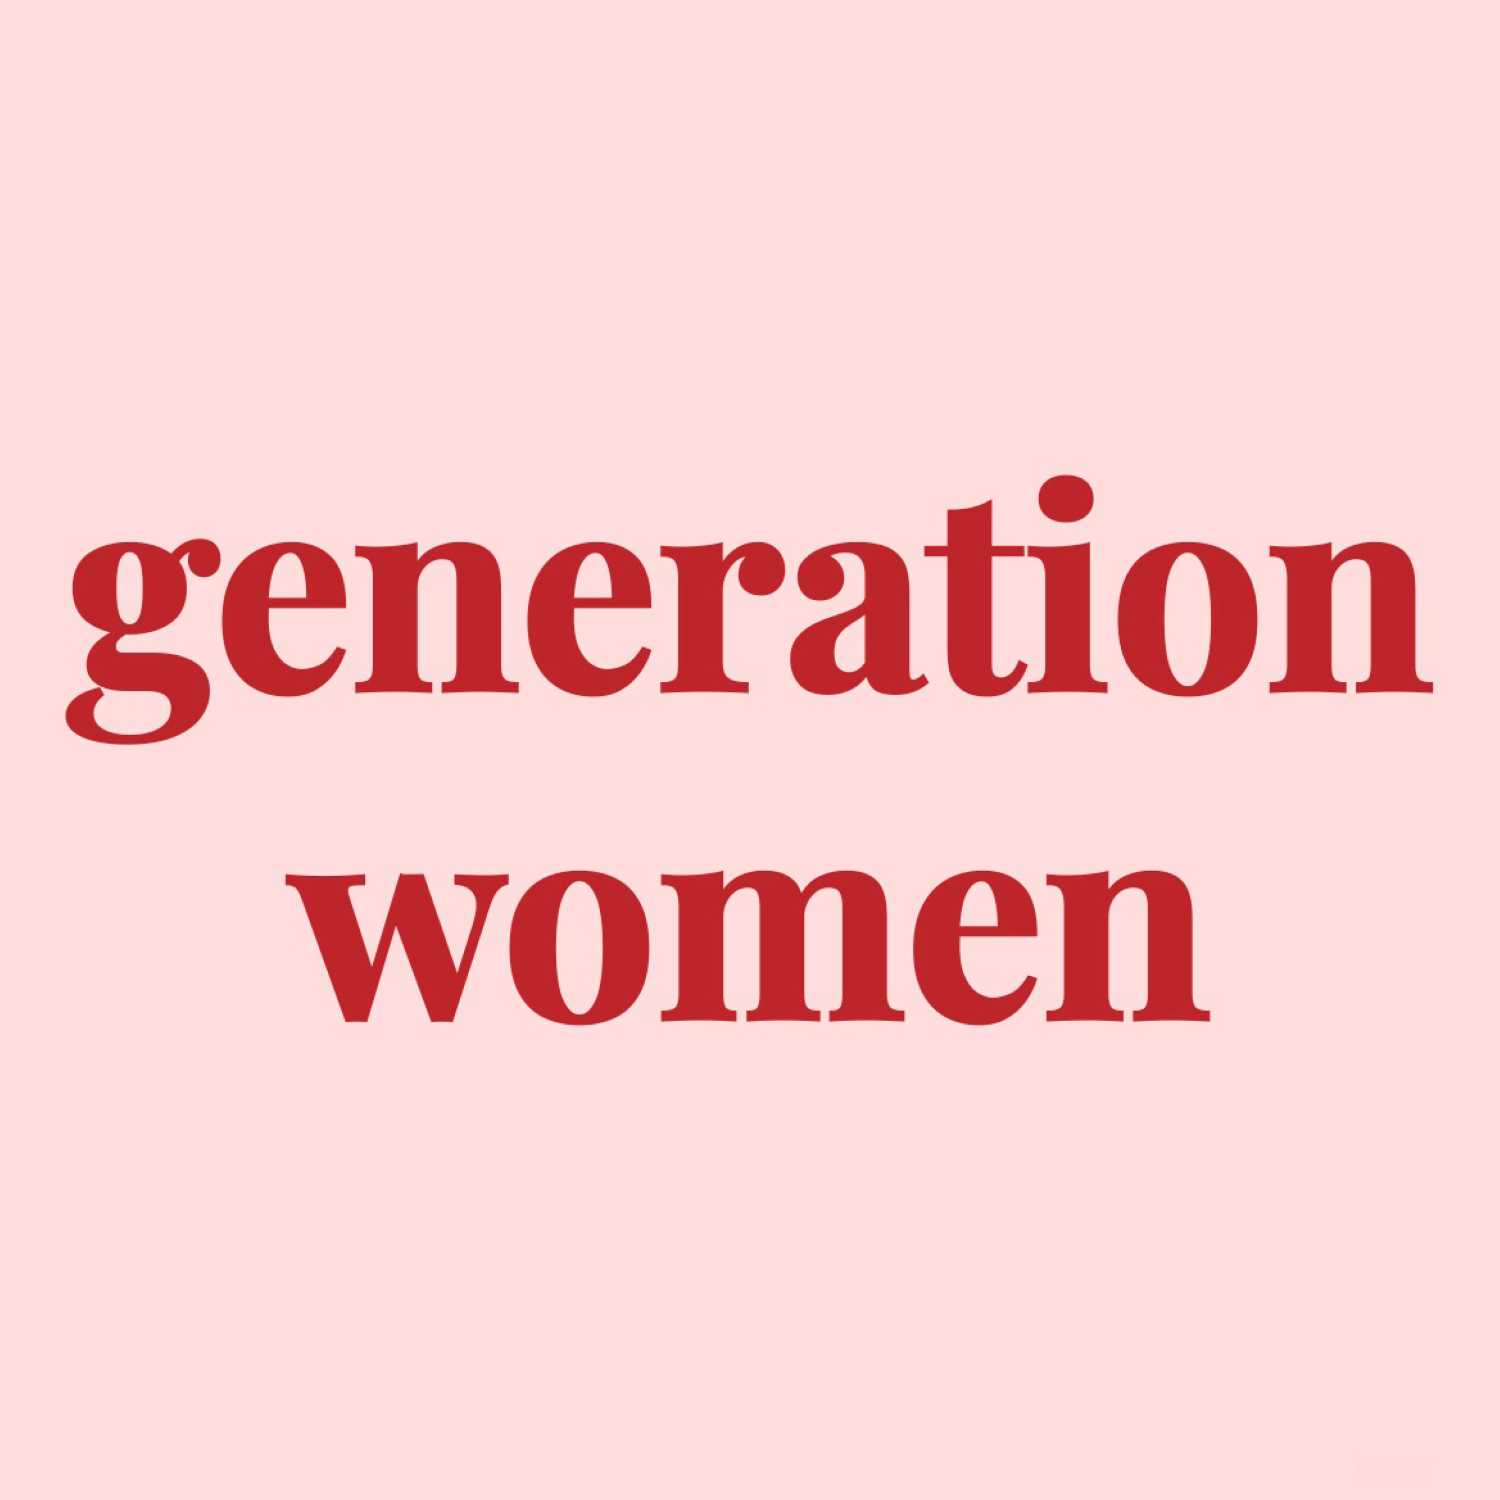 Generation Women